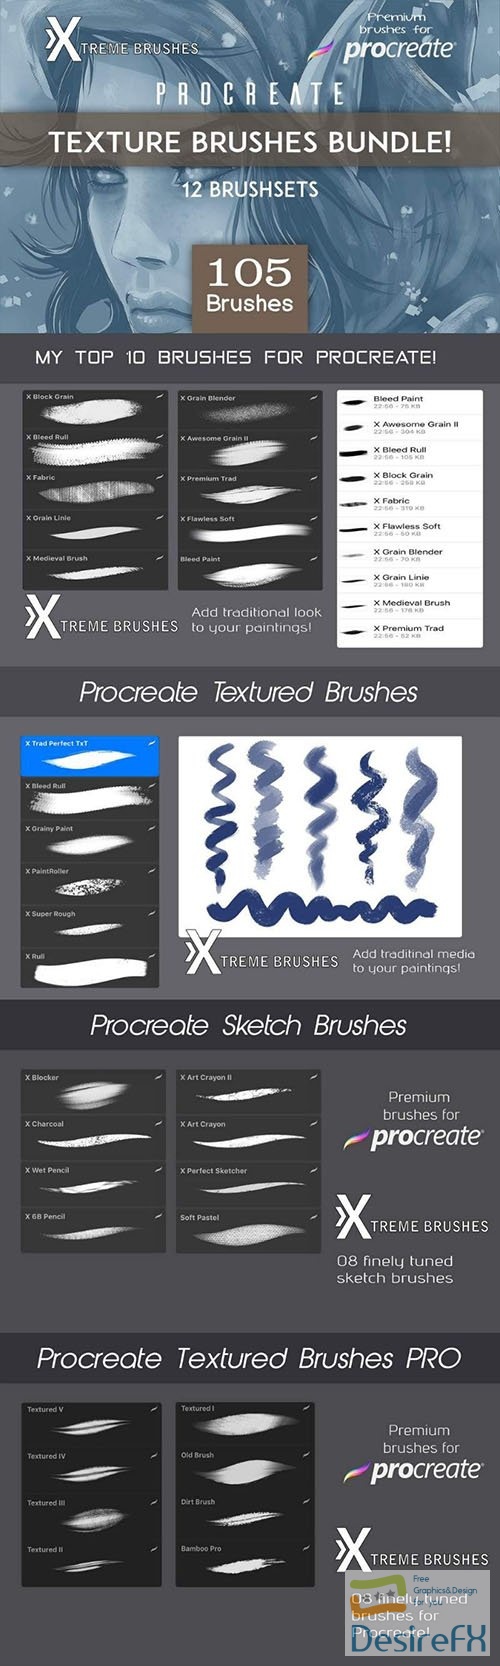 Procreate Texture Brushes BUNDLE 3480564